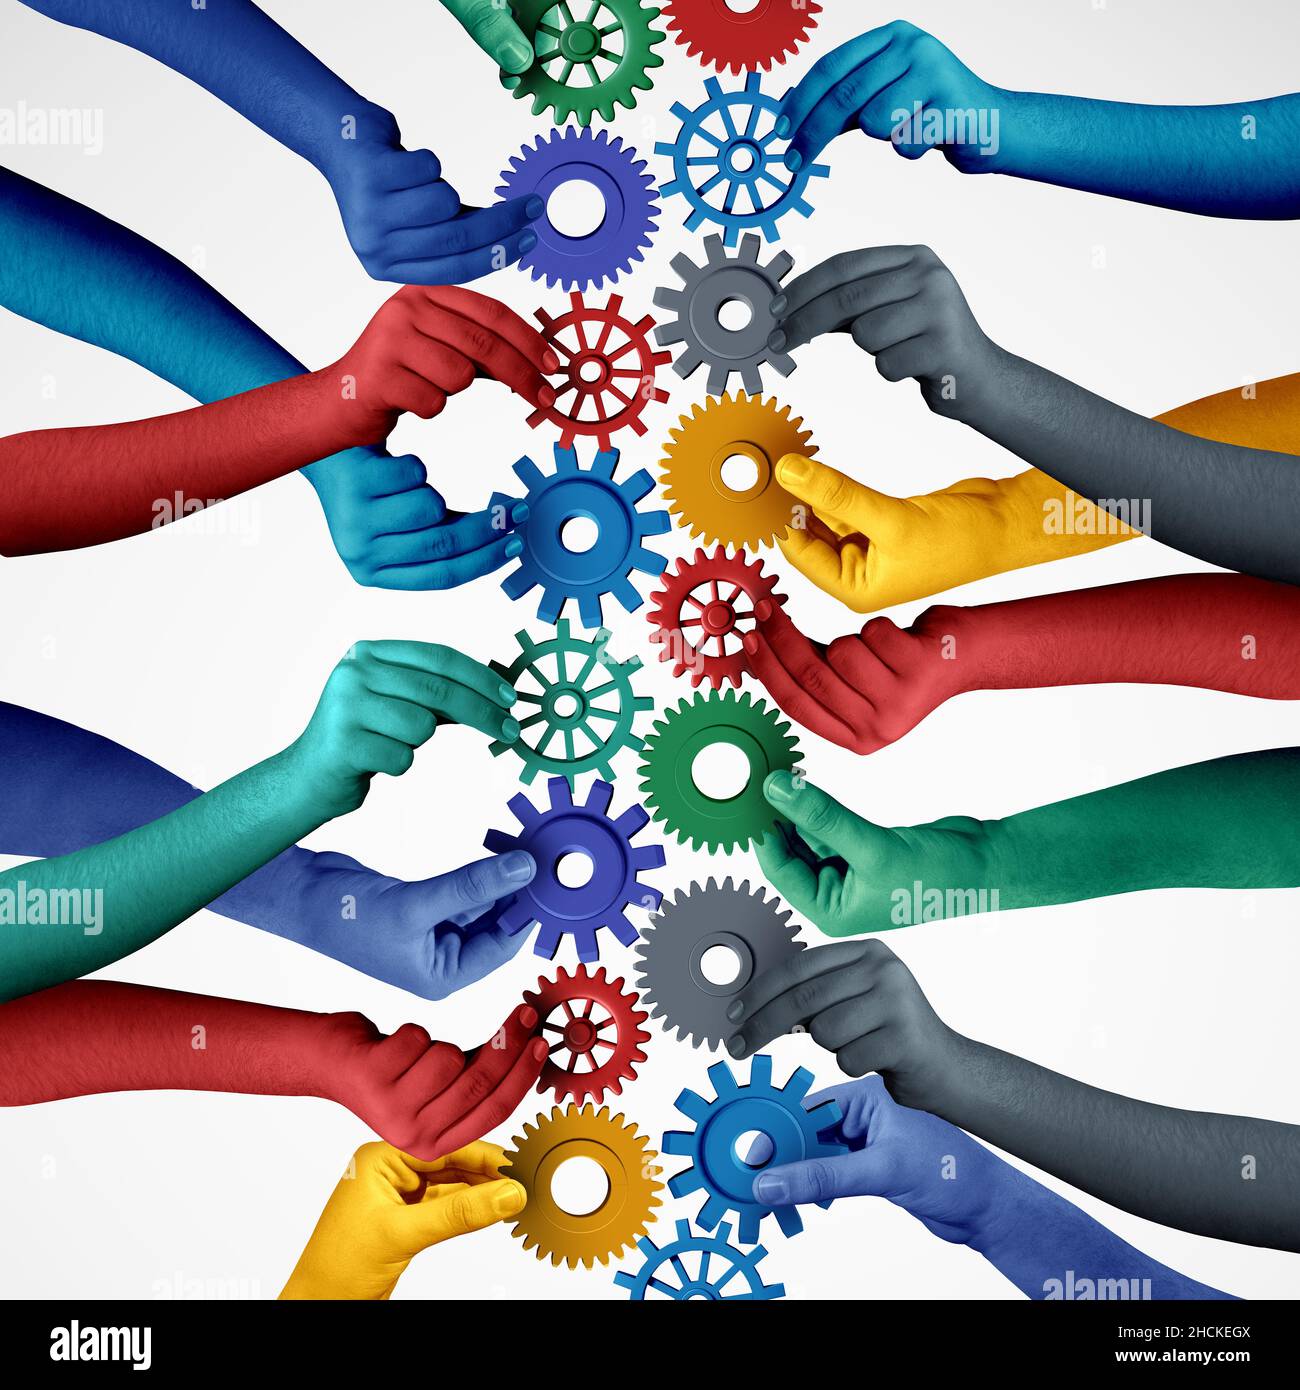 Le concept de collaboration de travail d'équipe et l'idée de connexion d'unité ou d'équipe comme une métaphore d'entreprise pour rejoindre un partenariat en tant que personnes diverses connectées. Banque D'Images